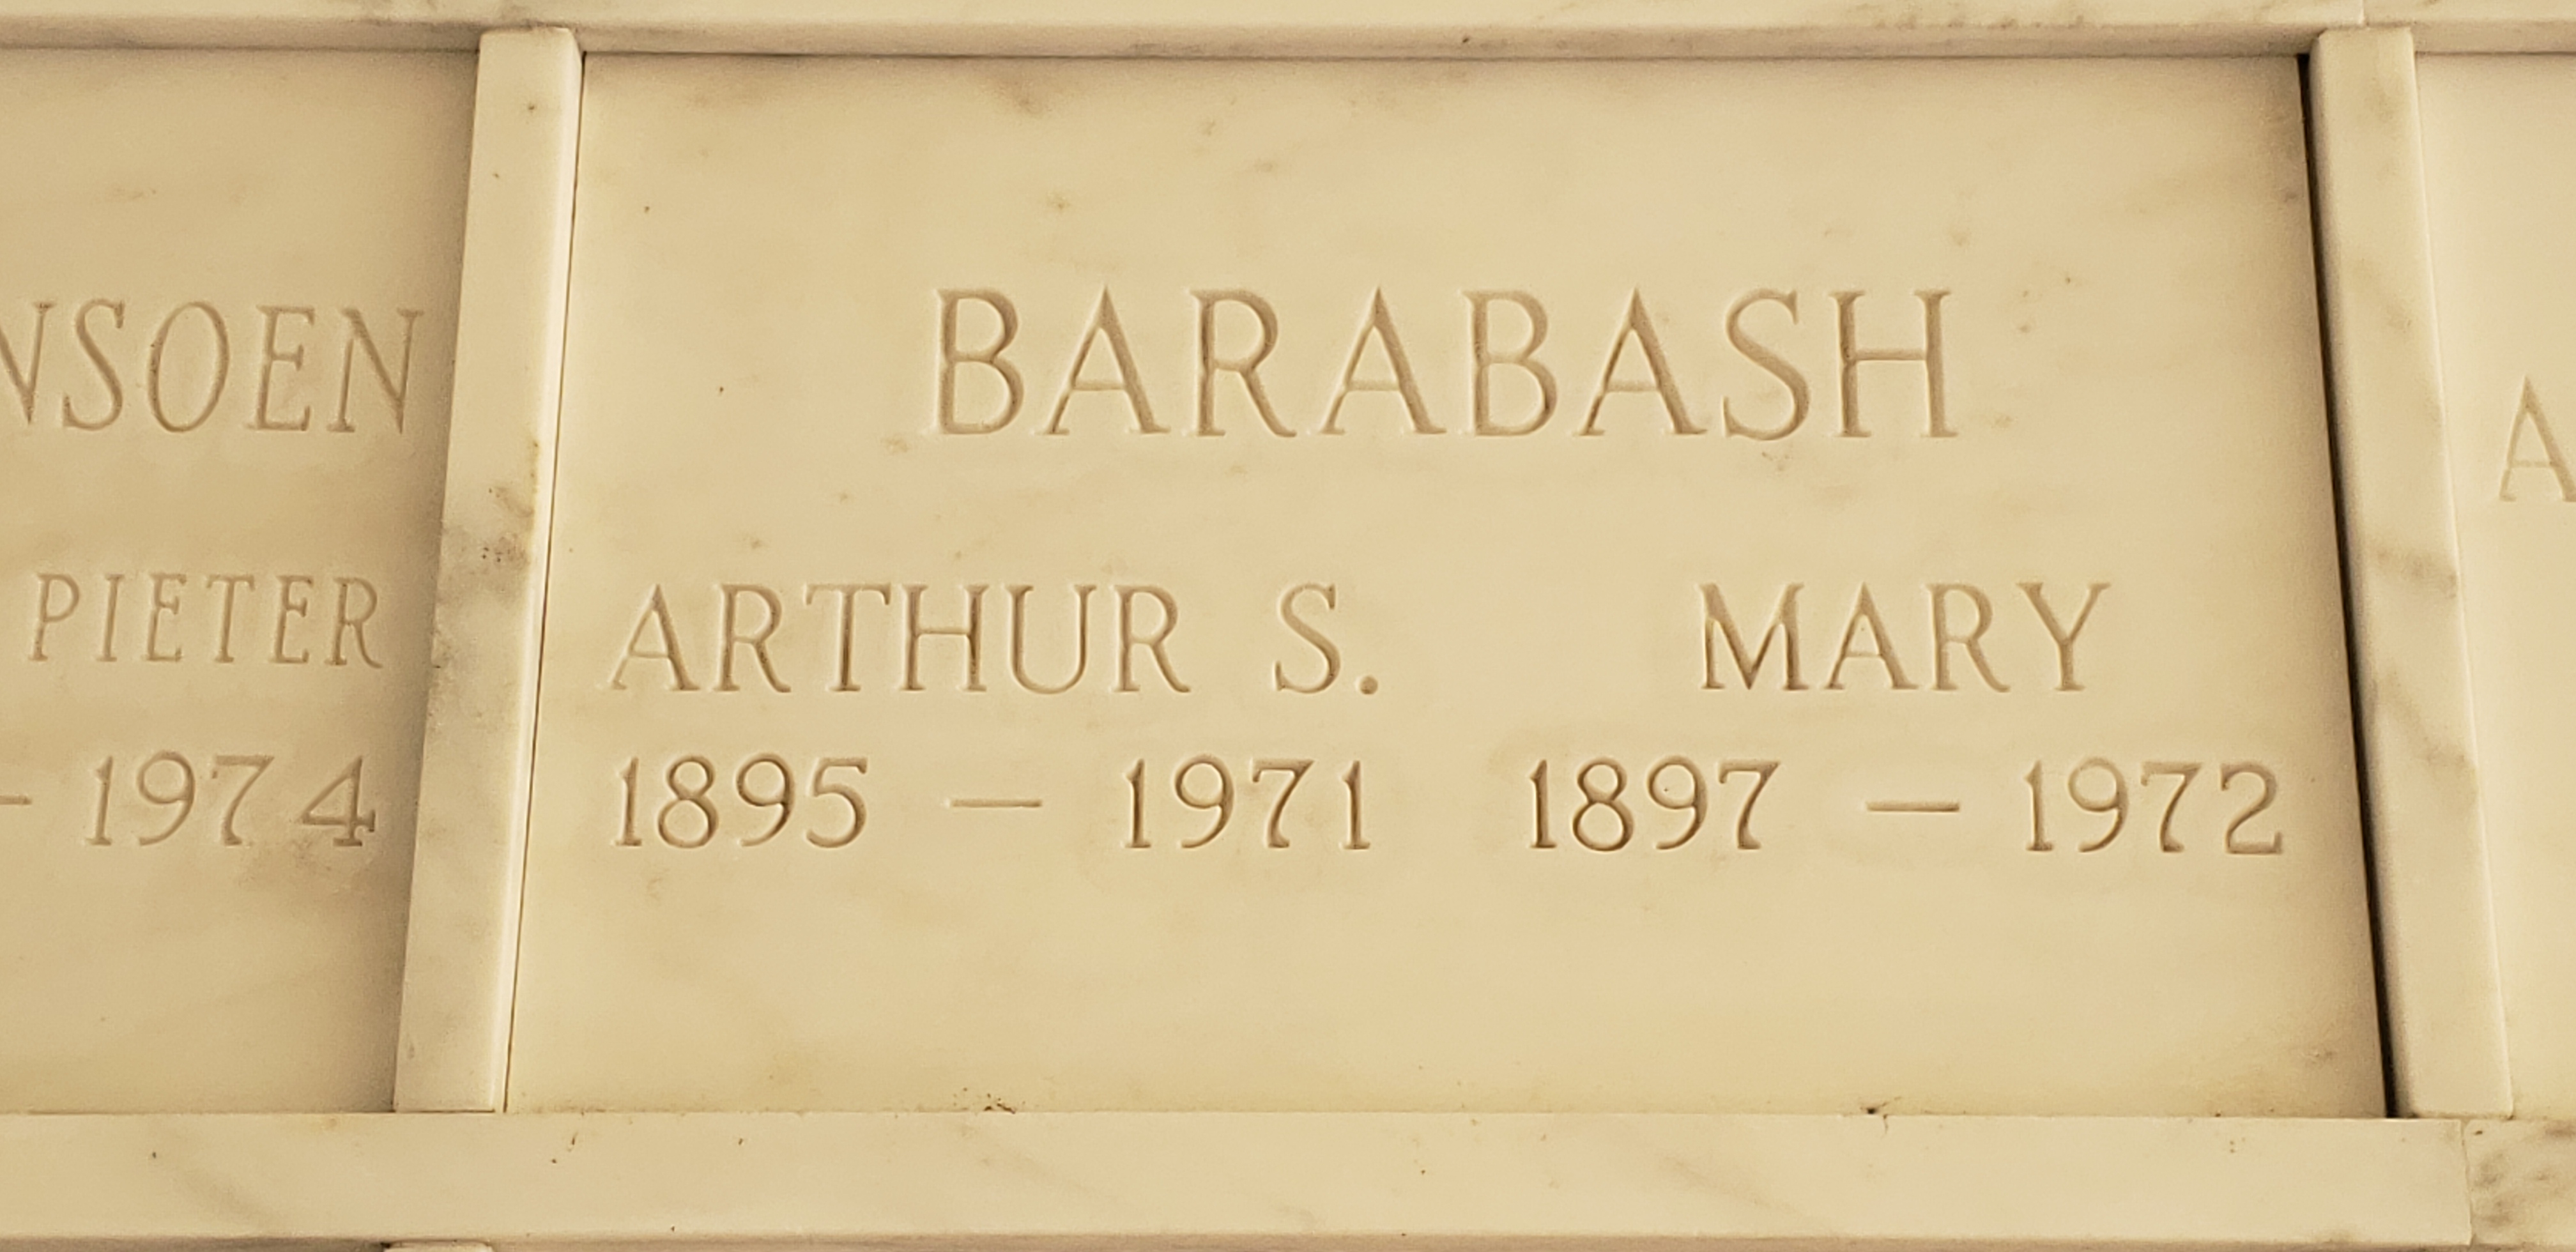 Arthur S Barabash